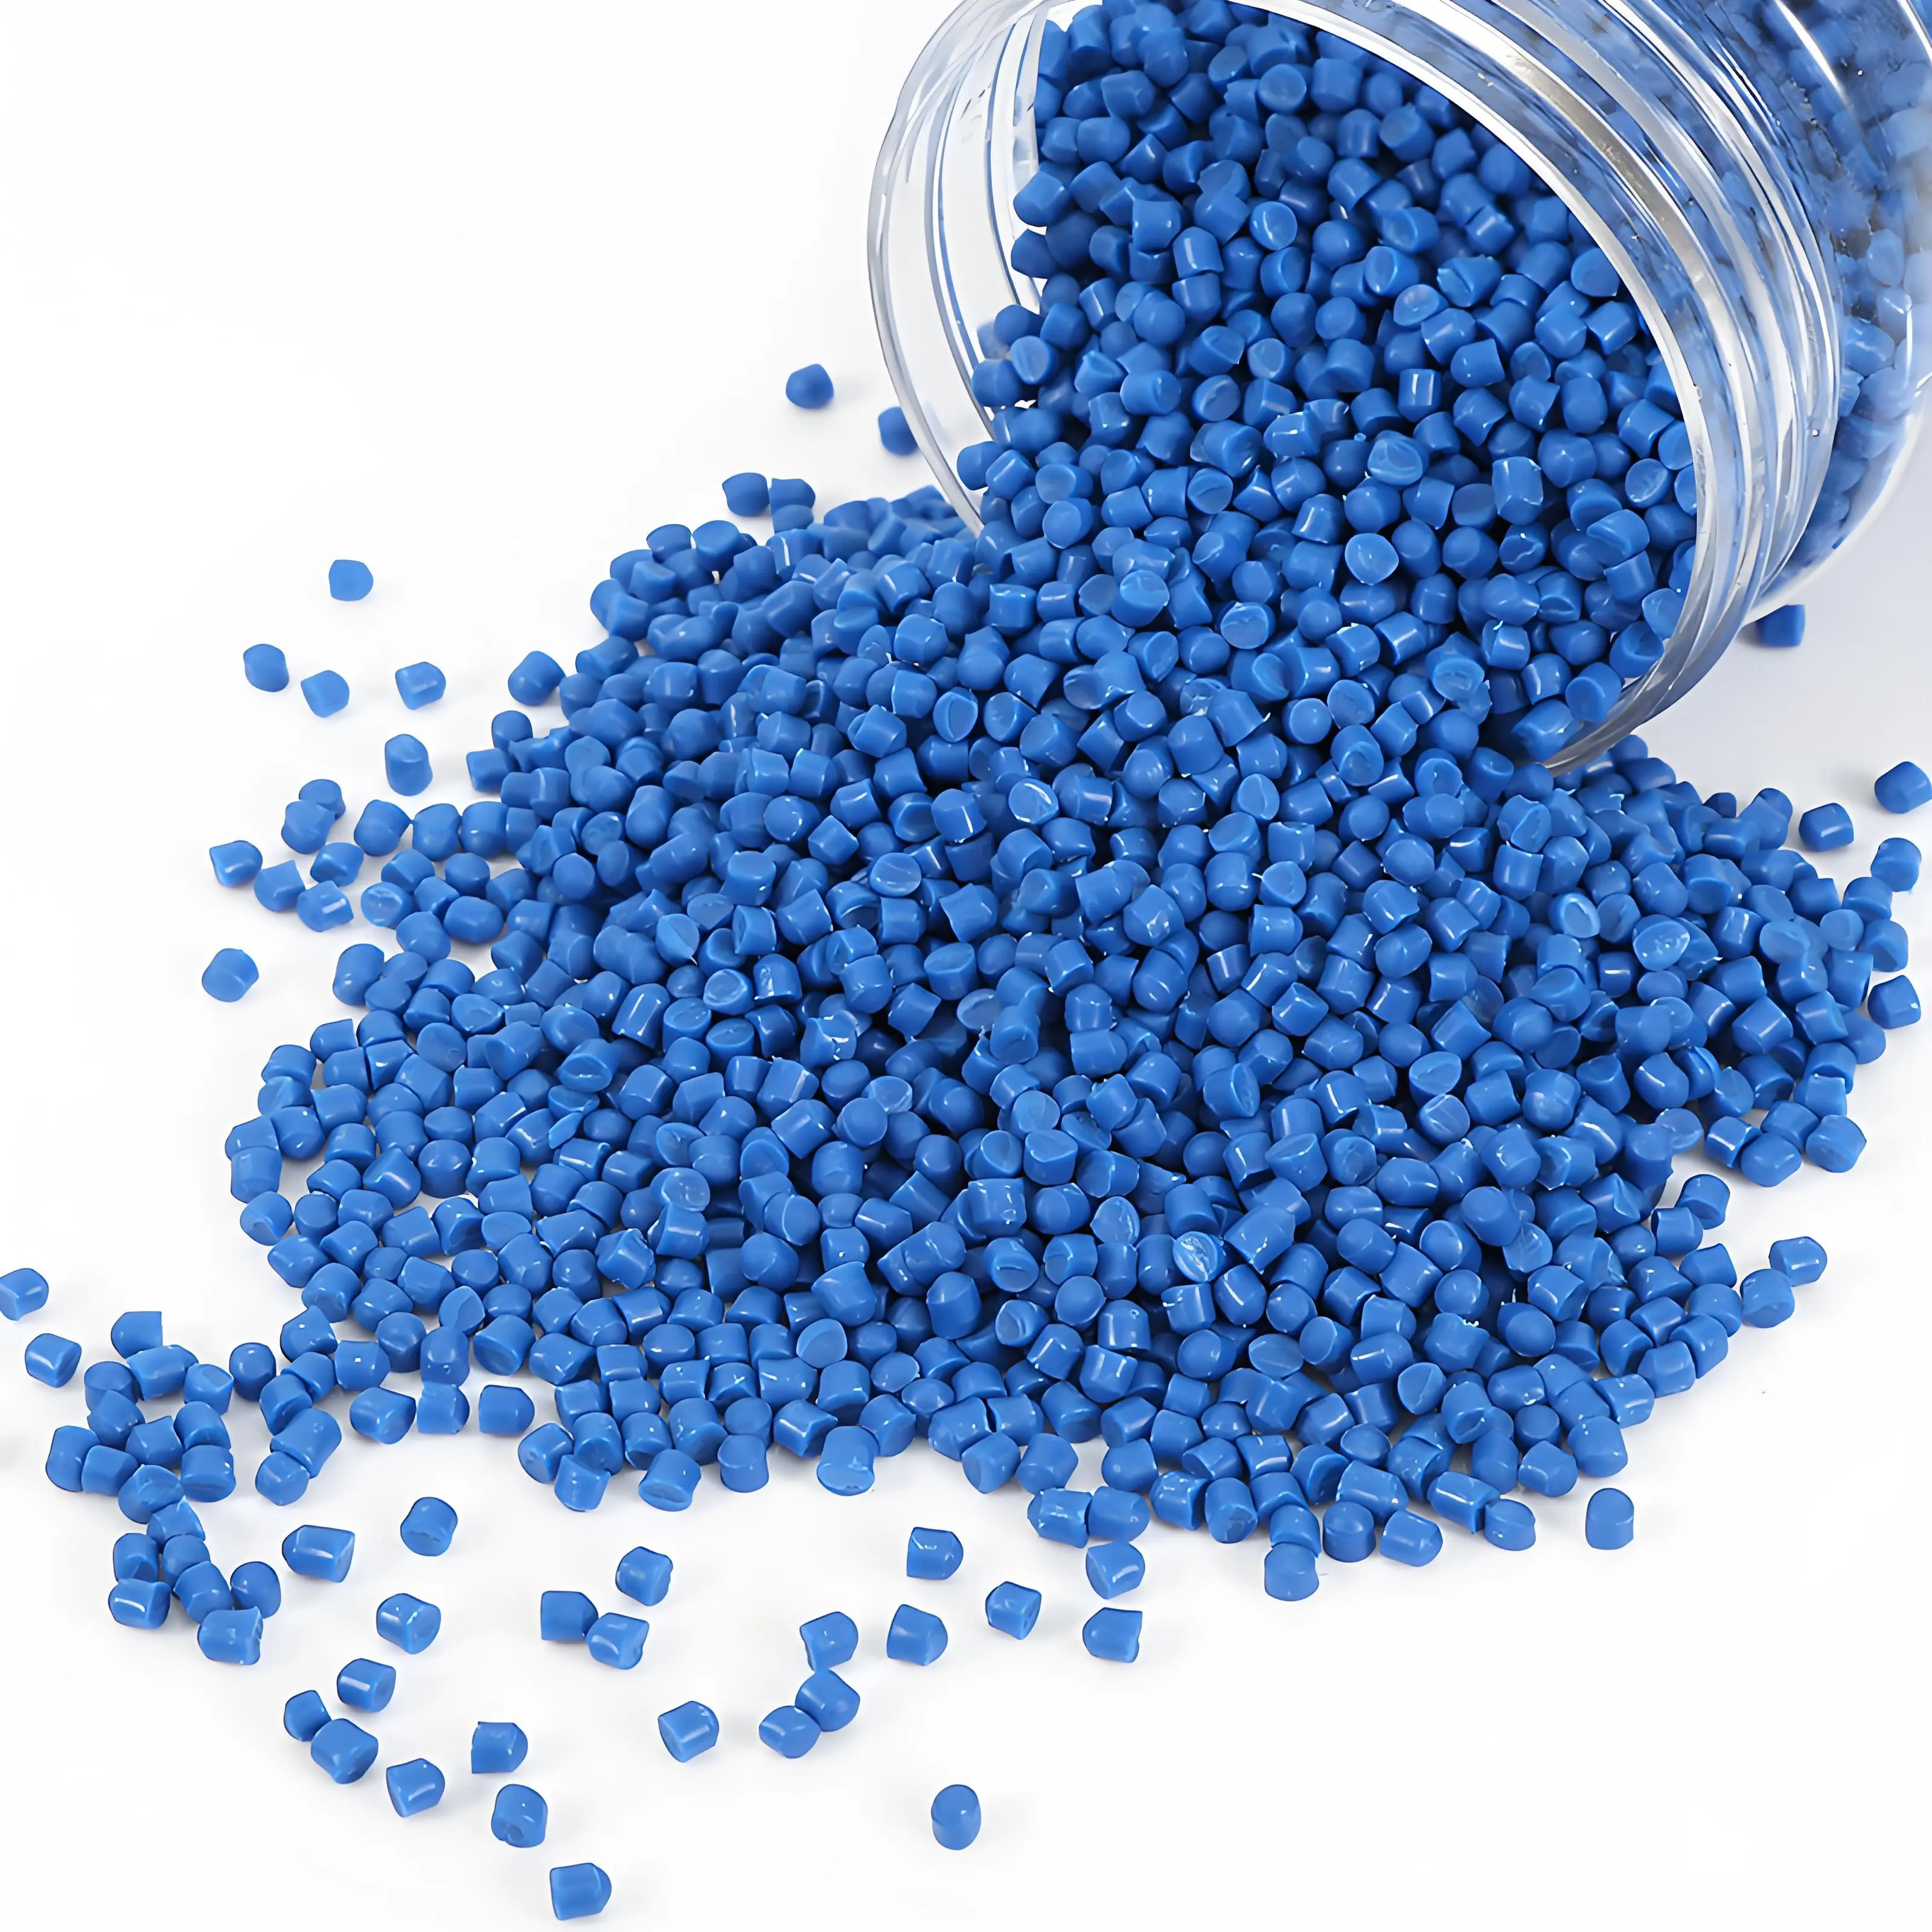 Revelando pellets para moldagem por injeção: etapas principais na fabricação de produtos de precisão